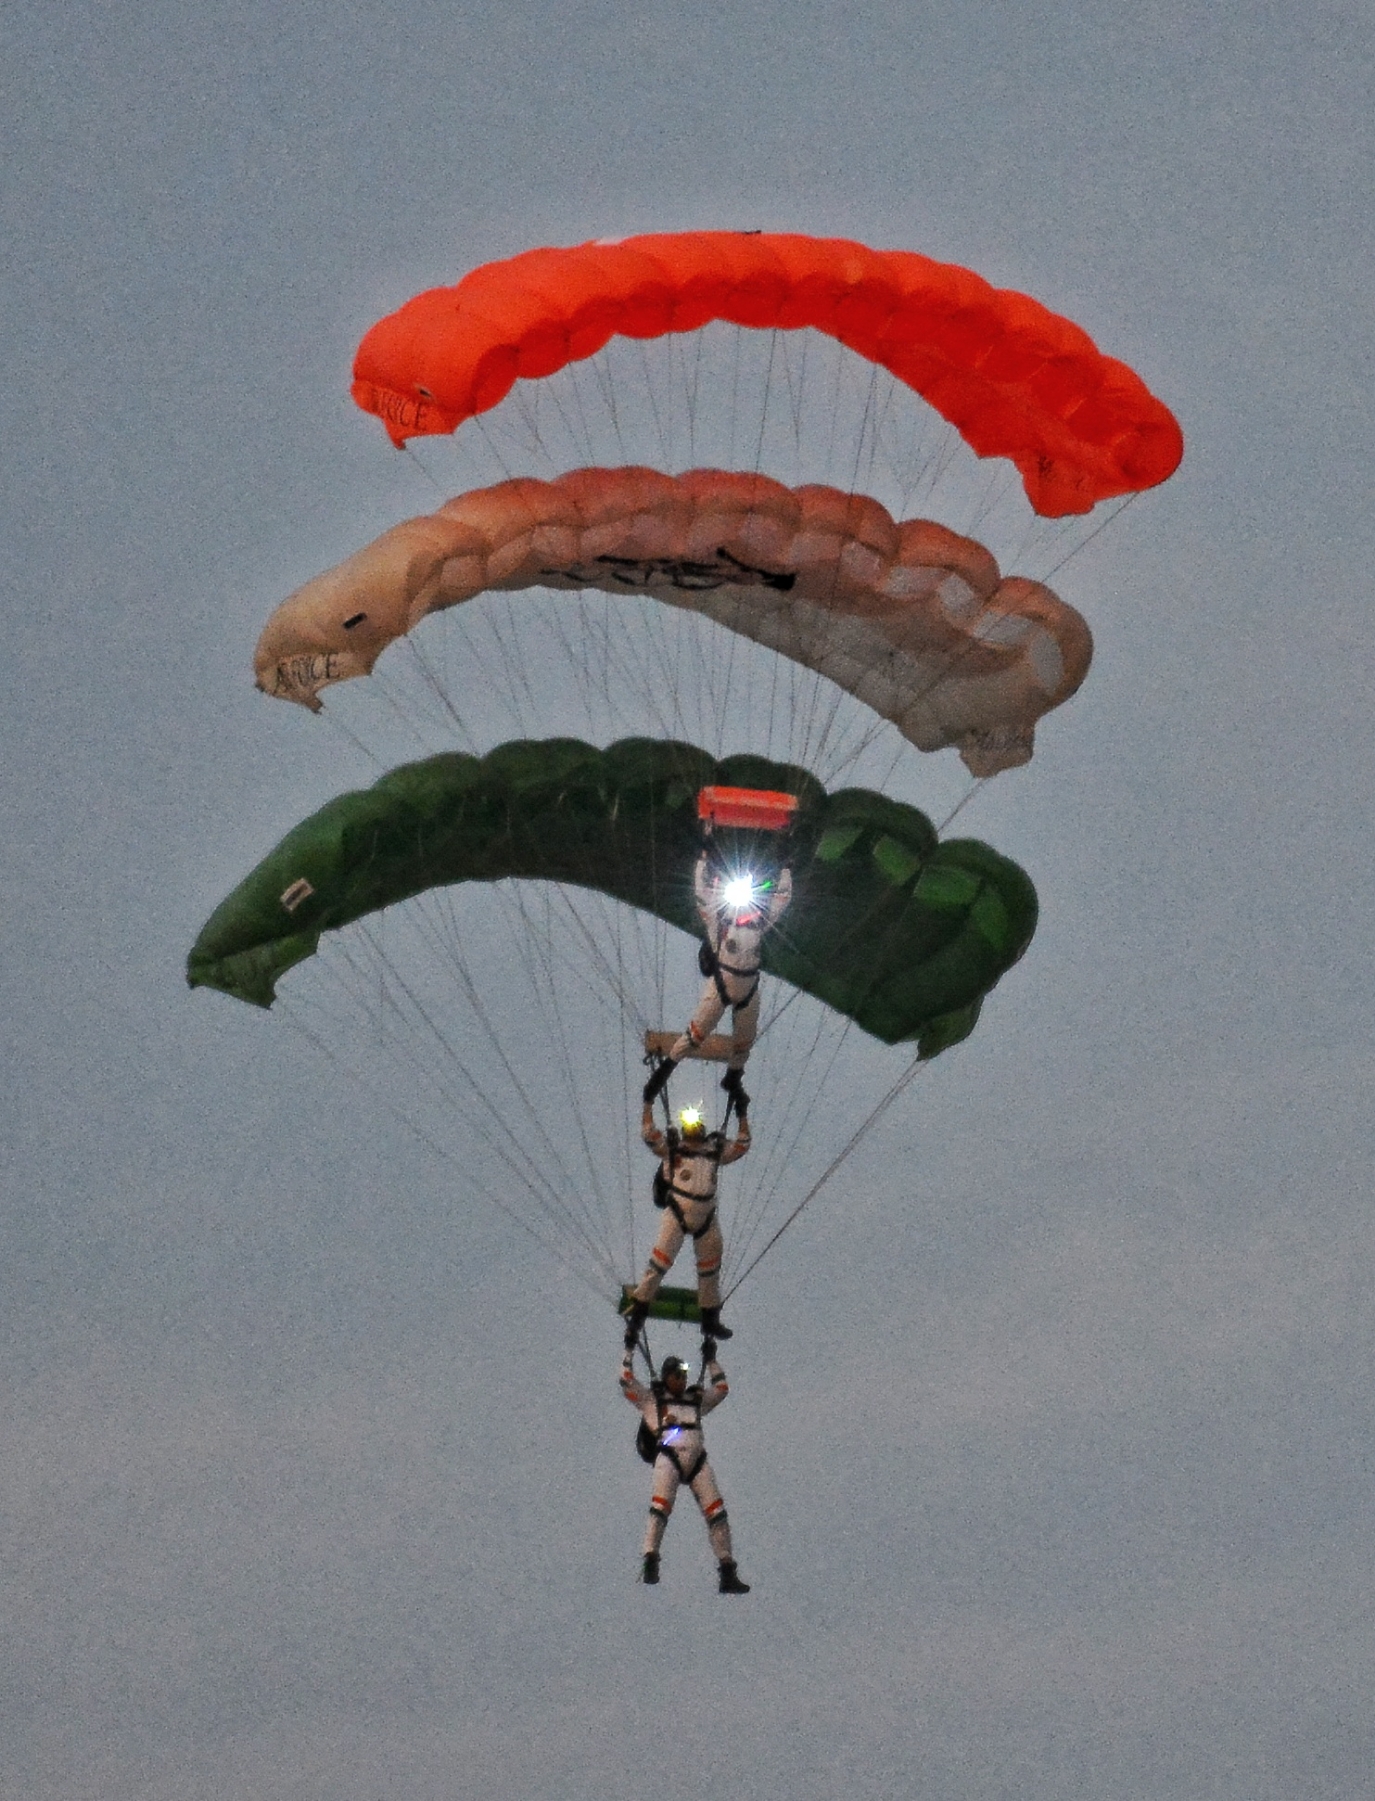 भारतीय वायु सेना ने जैसलमेर के पास पोखरण एयर टू ग्राउंड रेंज में अभ्यास वायु शक्ति-2024 का वायु शक्ति अभ्यास के द्वारा राफेल-मिग से लेकर तेजस तक ने सीमा के पास दुश्मनों के यूं उड़ाए होश।